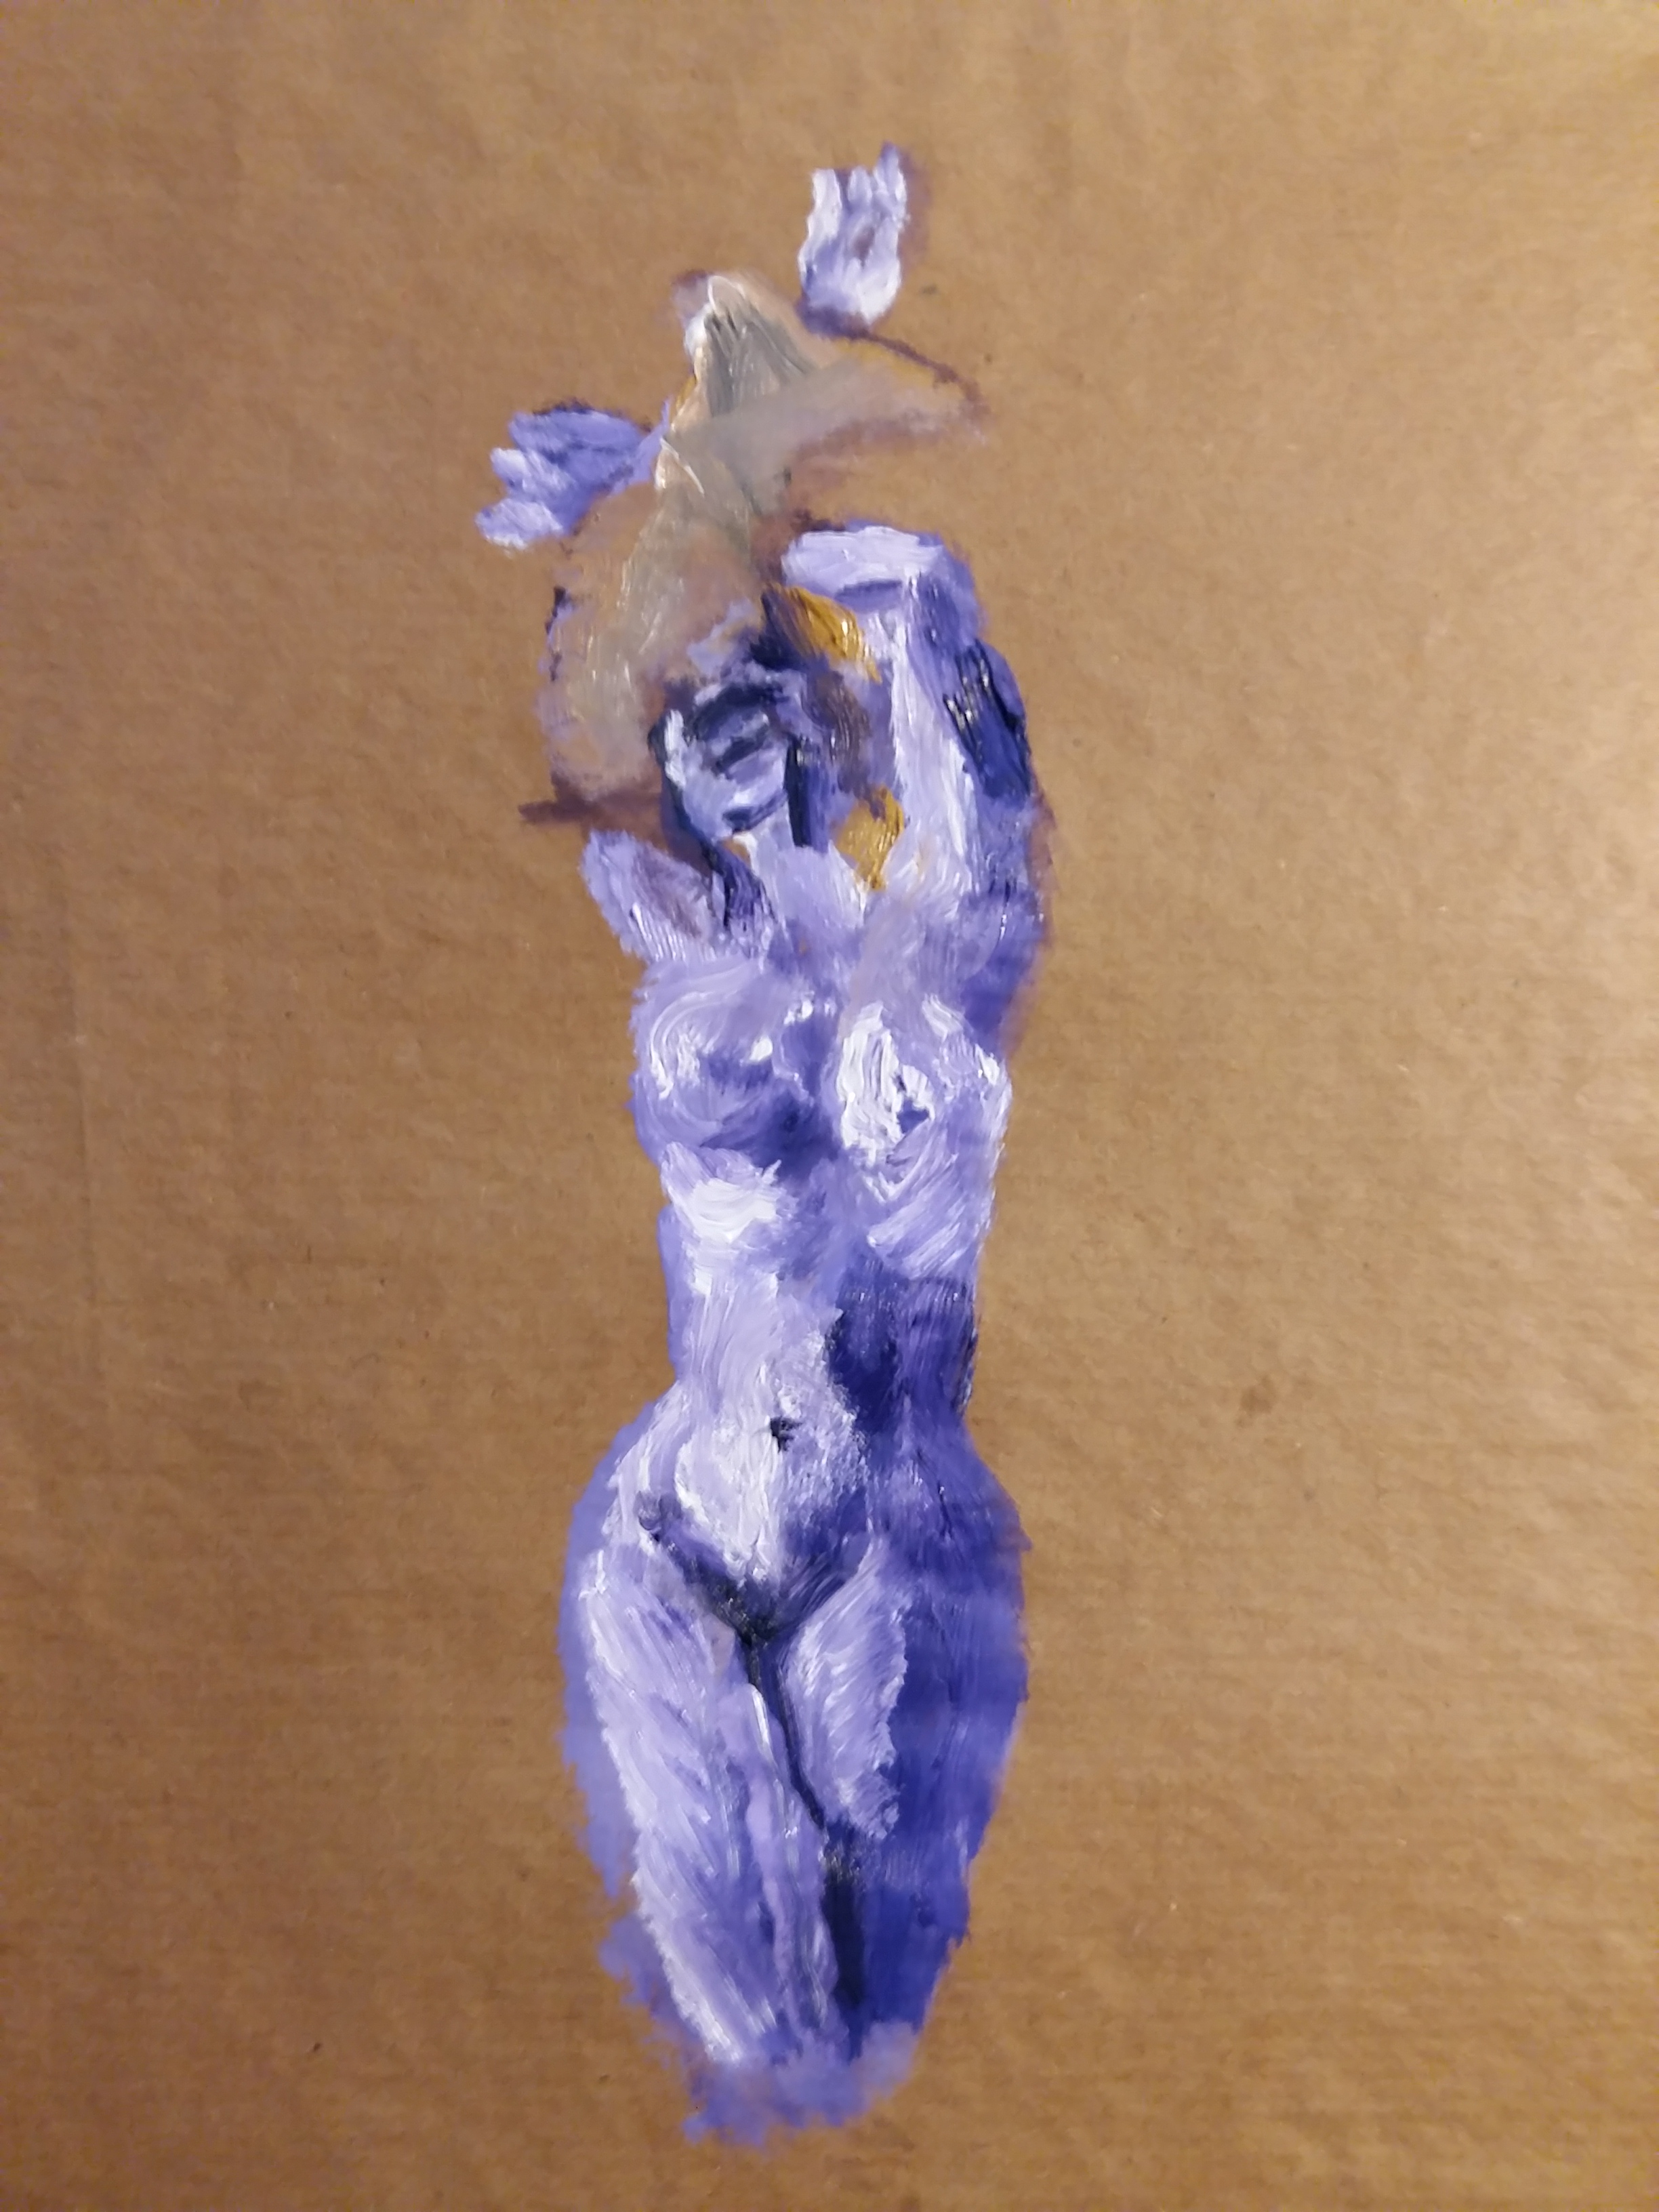  Peinture corps violet face sur papier marron  cours de dessin 